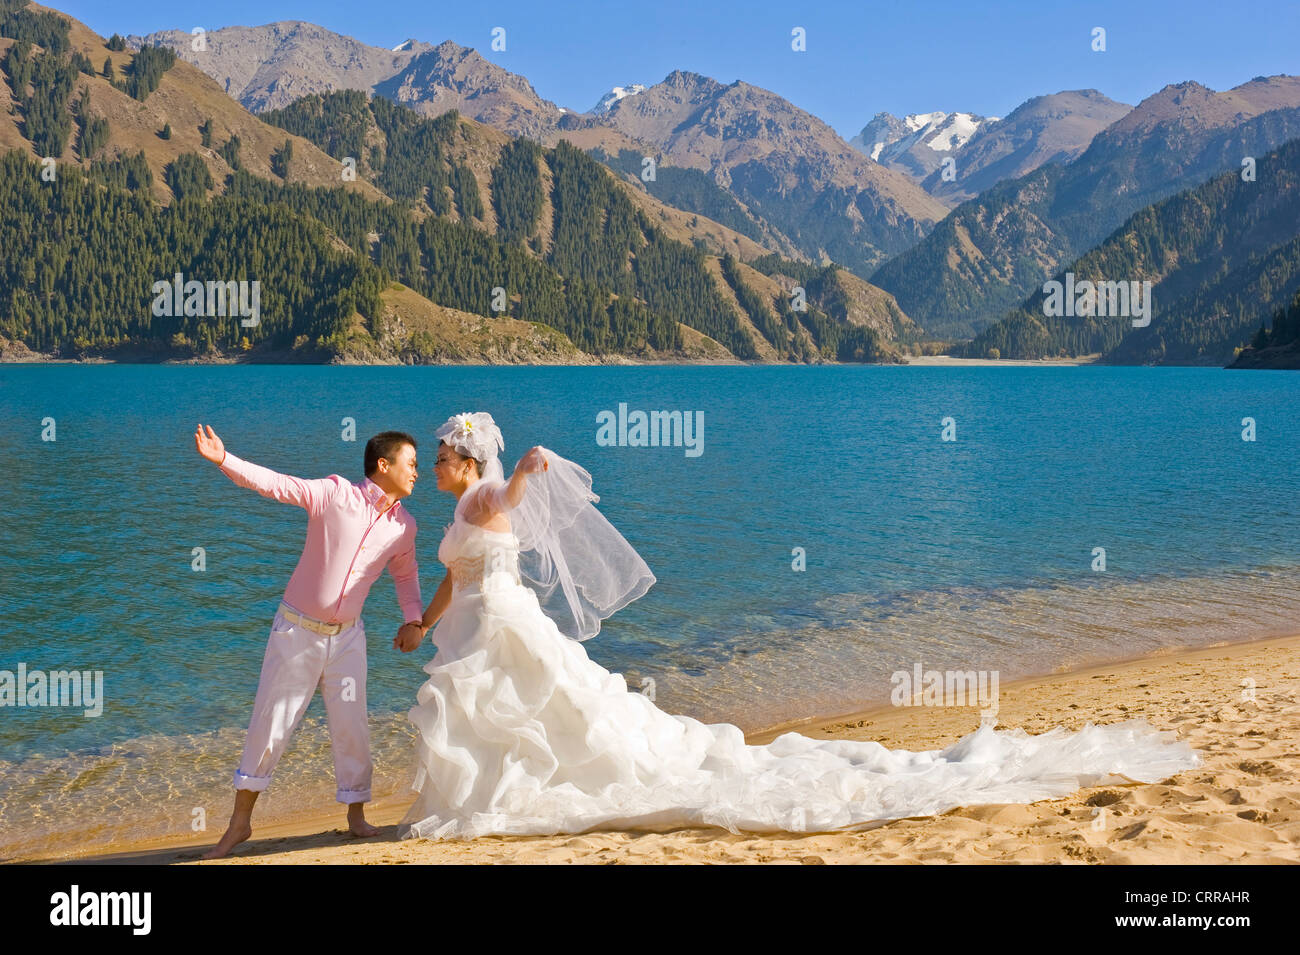 Ein chinesisches Ehepaar für ihre Hochzeitsfotos an der beliebten alpine Schönheit Stelle des himmlischen See darstellen. Stockfoto